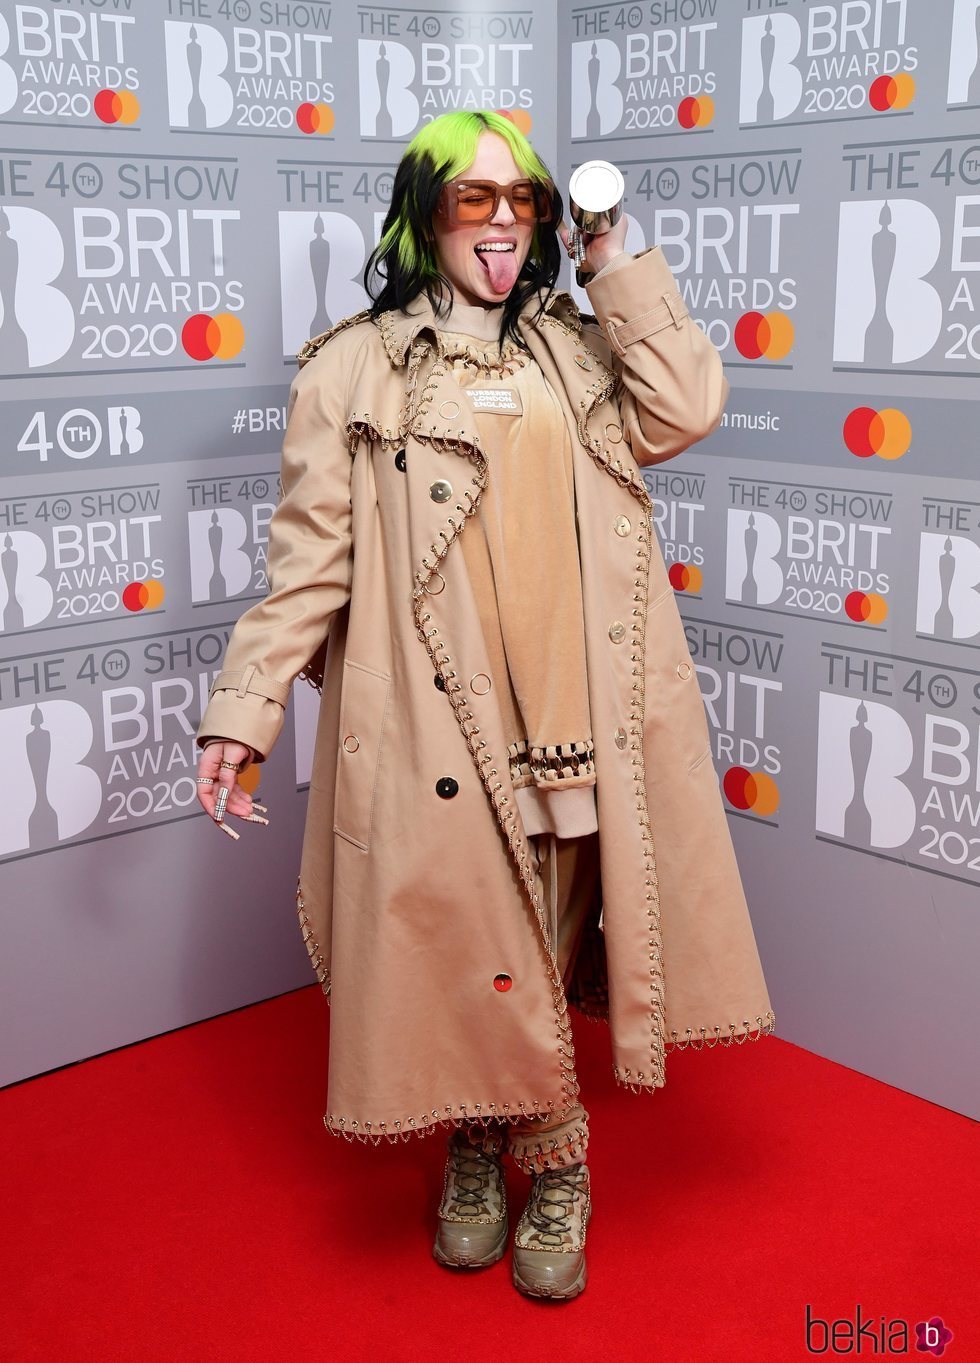 Billie Eilish posa con su premio tras los Brit Awards 2020